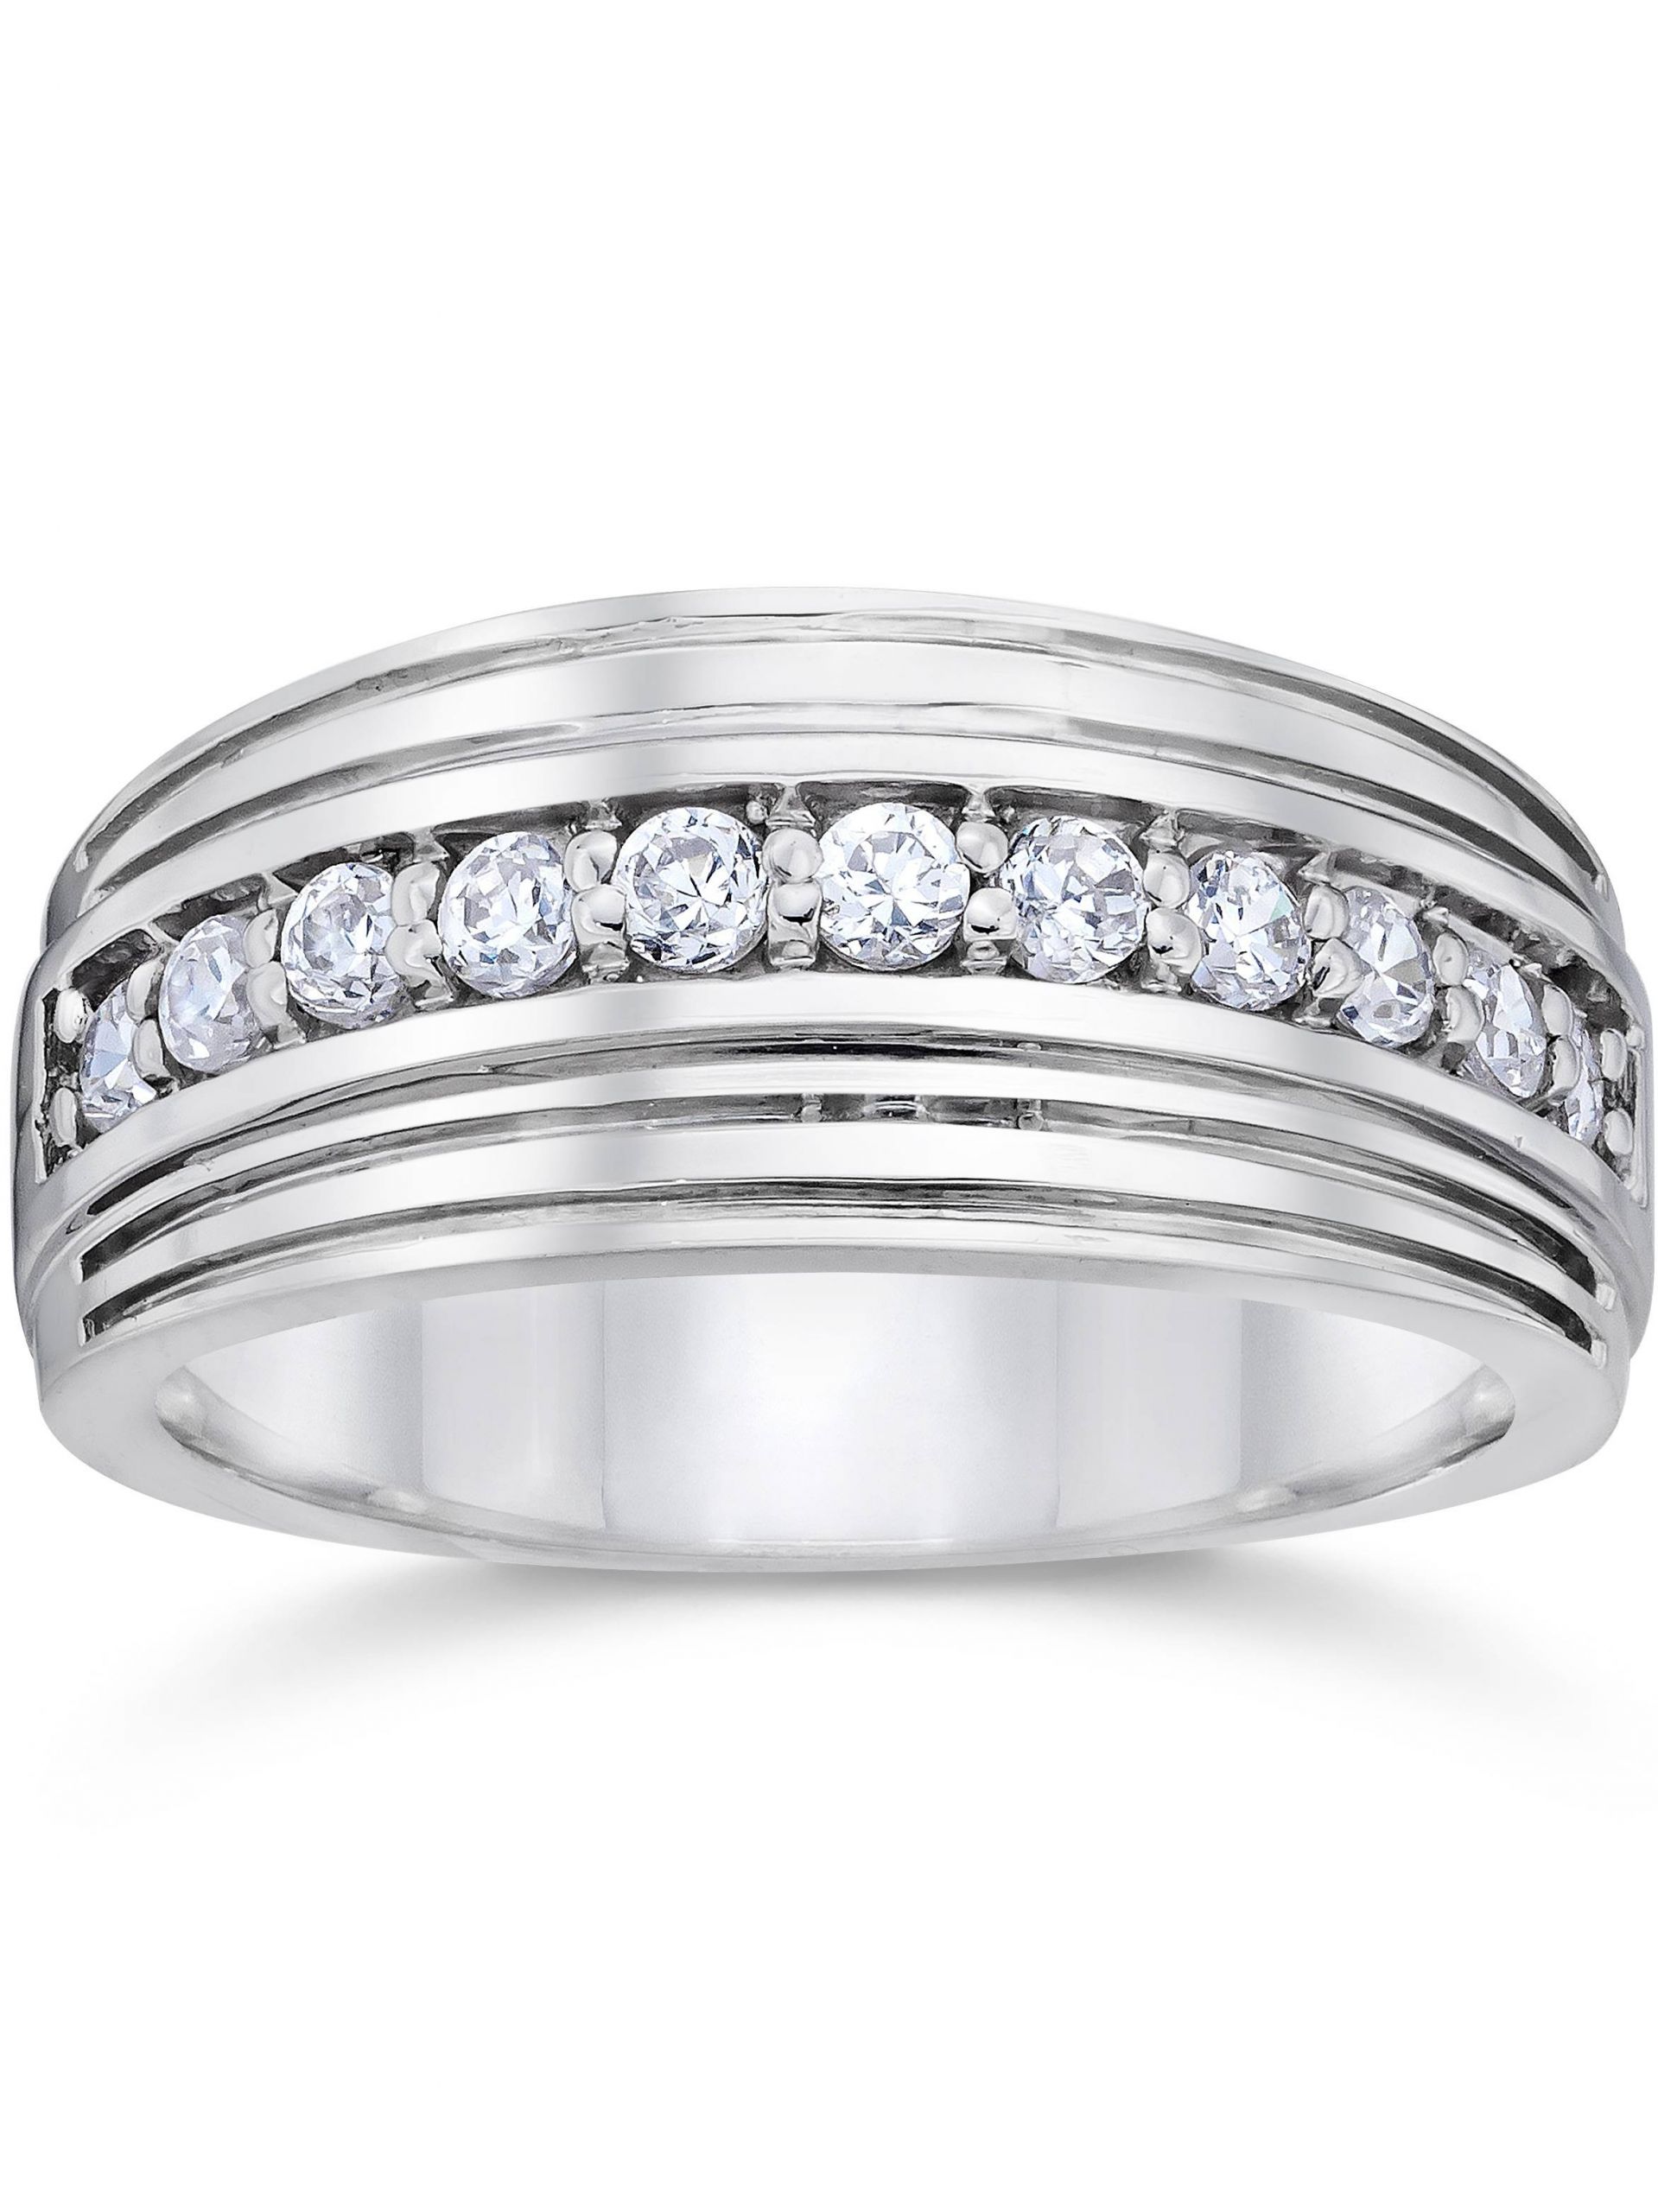 Walmart Diamond Wedding Rings
 1 2 Carat Mens Diamond Wedding Ring 10K White Gold